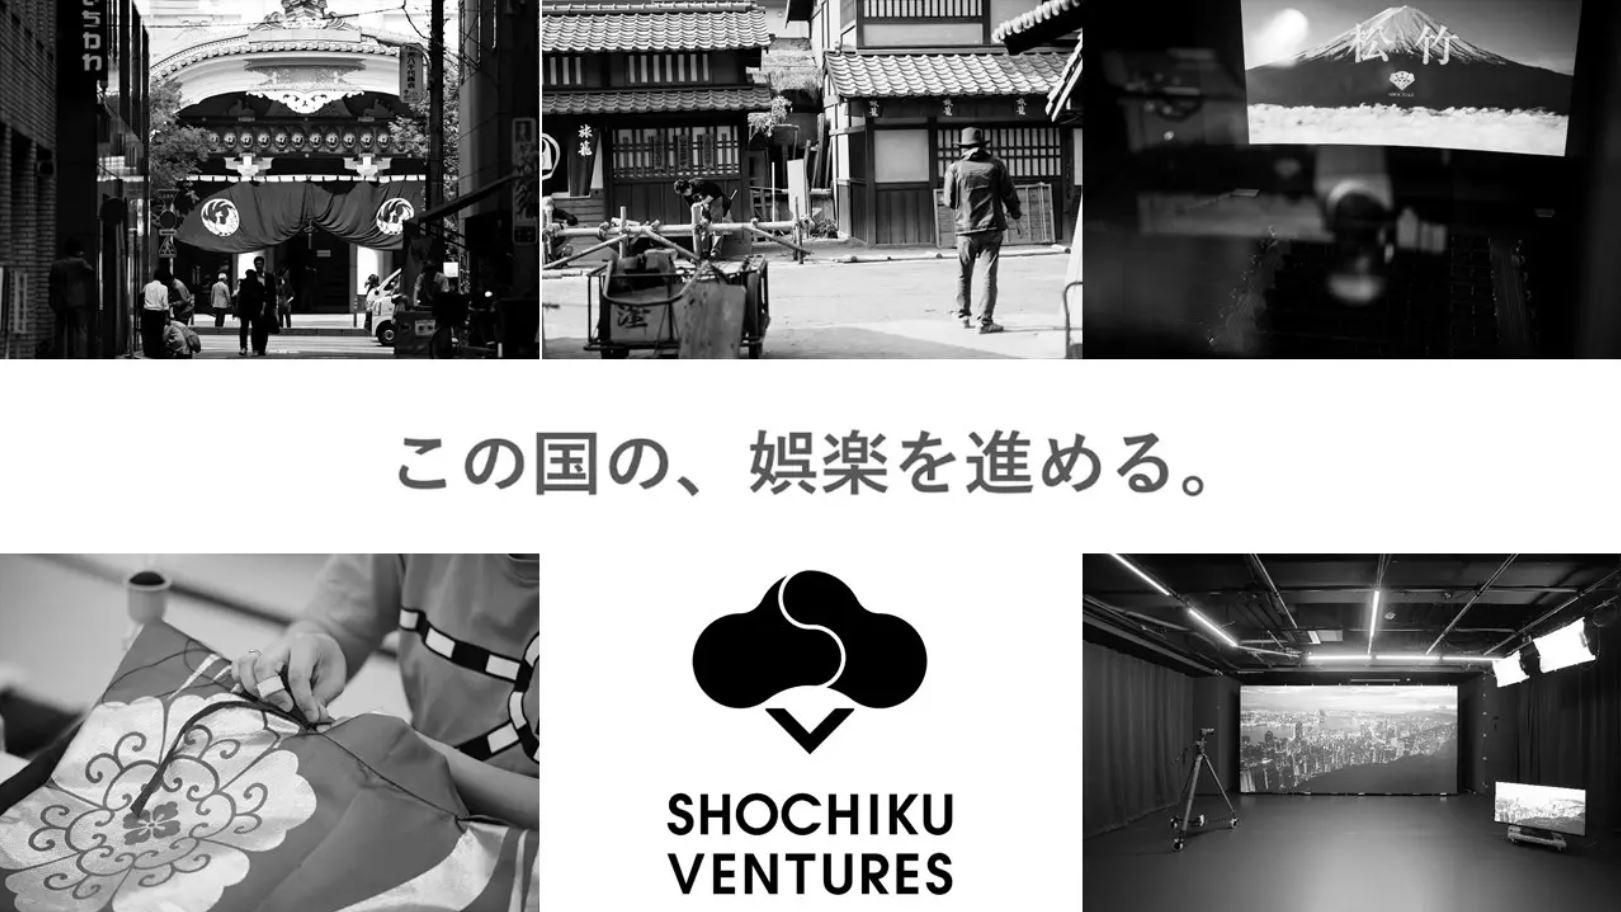 Shochiku Ventures